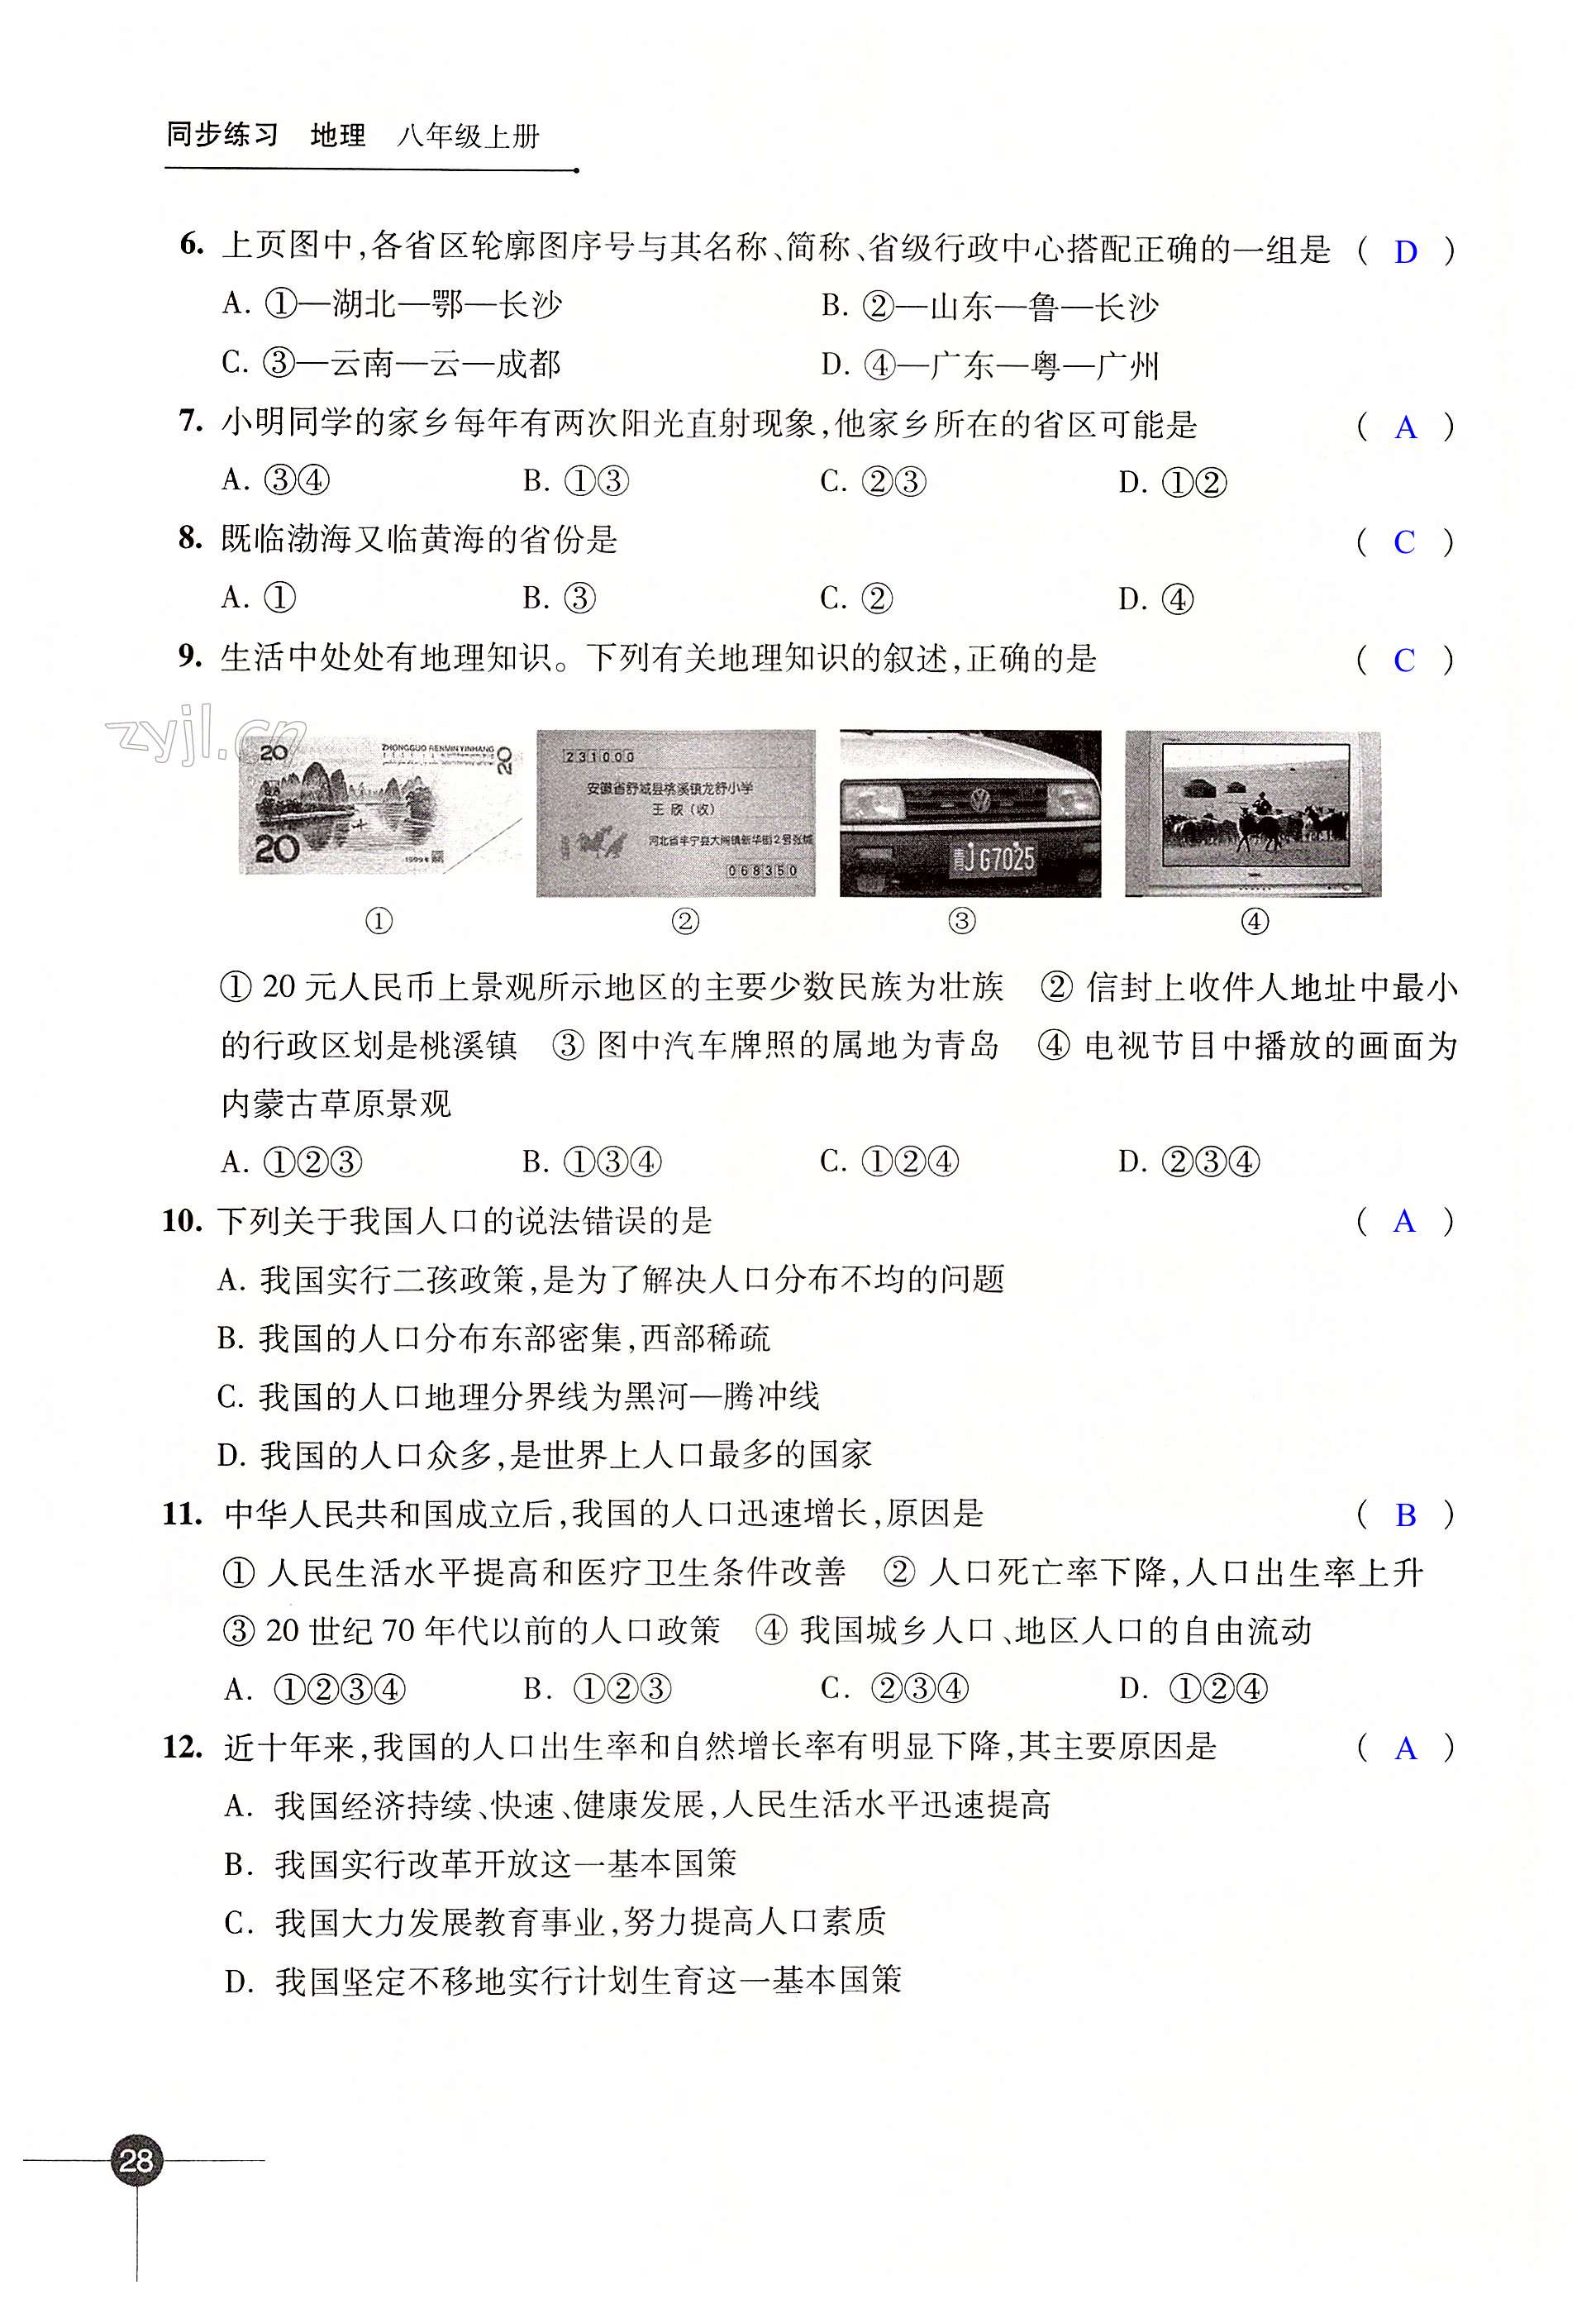 第一章 中国的疆域与人口 - 第28页